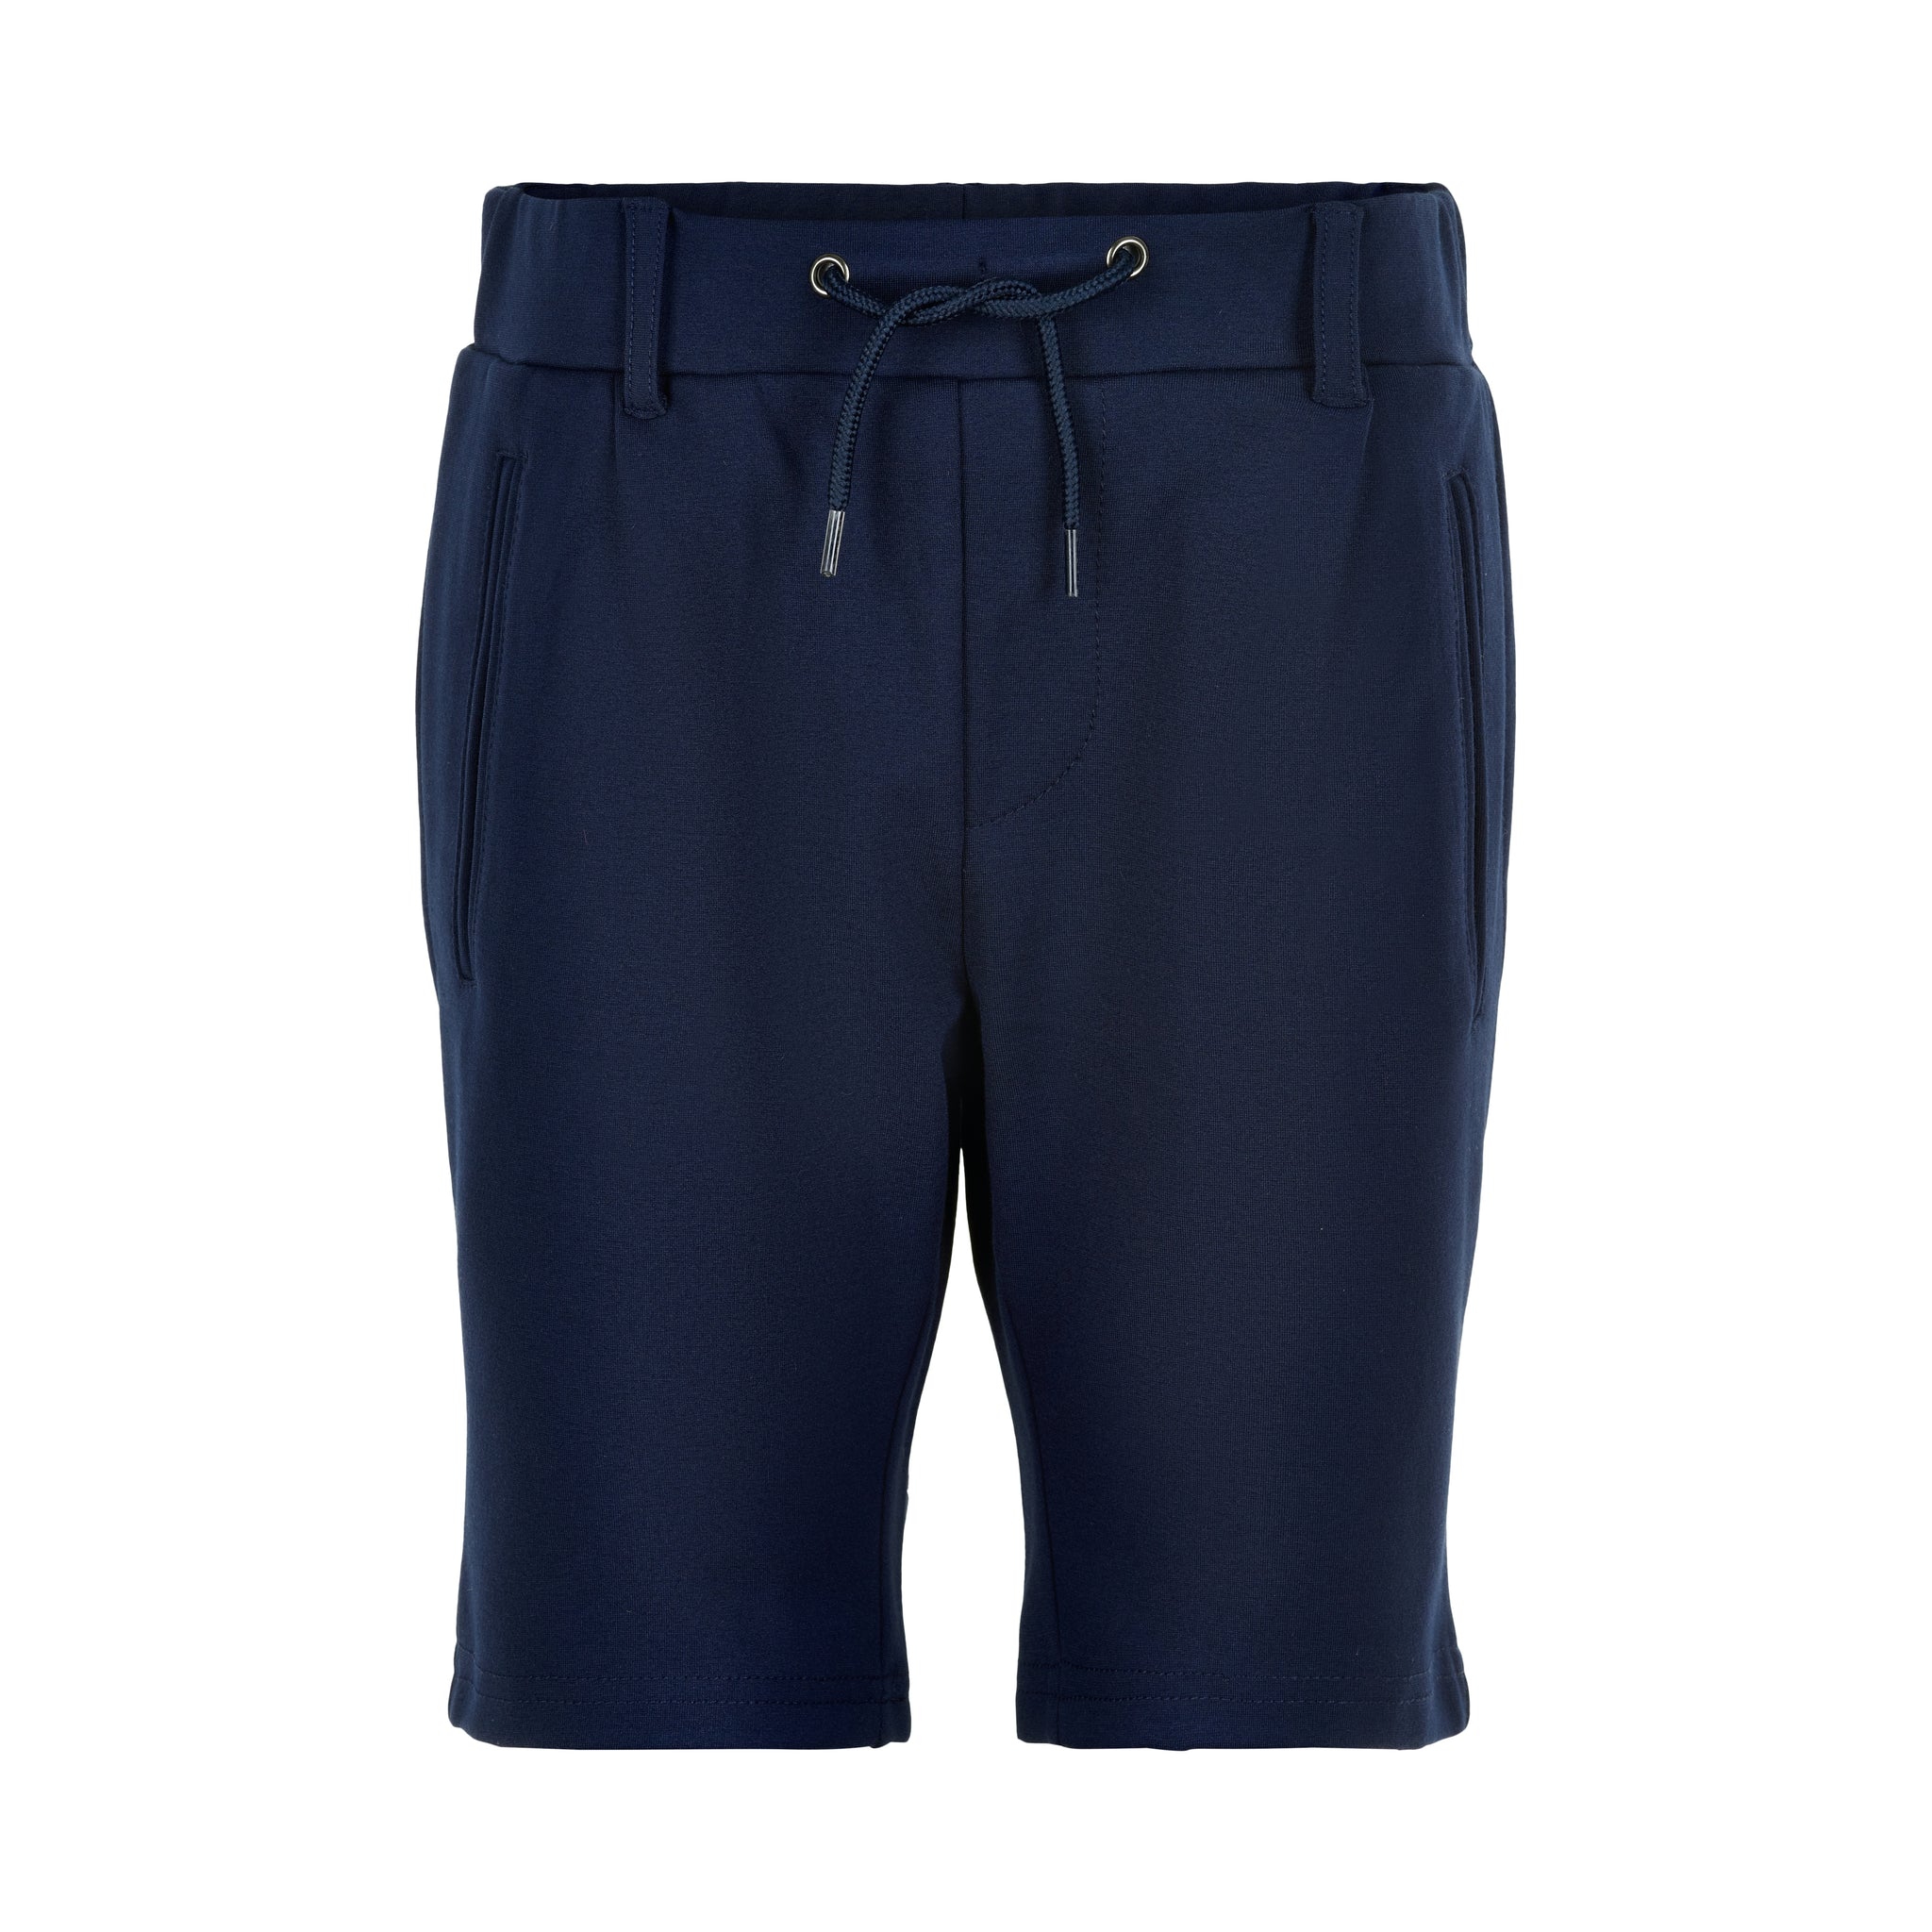 THE NEW - Owen Shorts (TN3619) - Navy Blazer